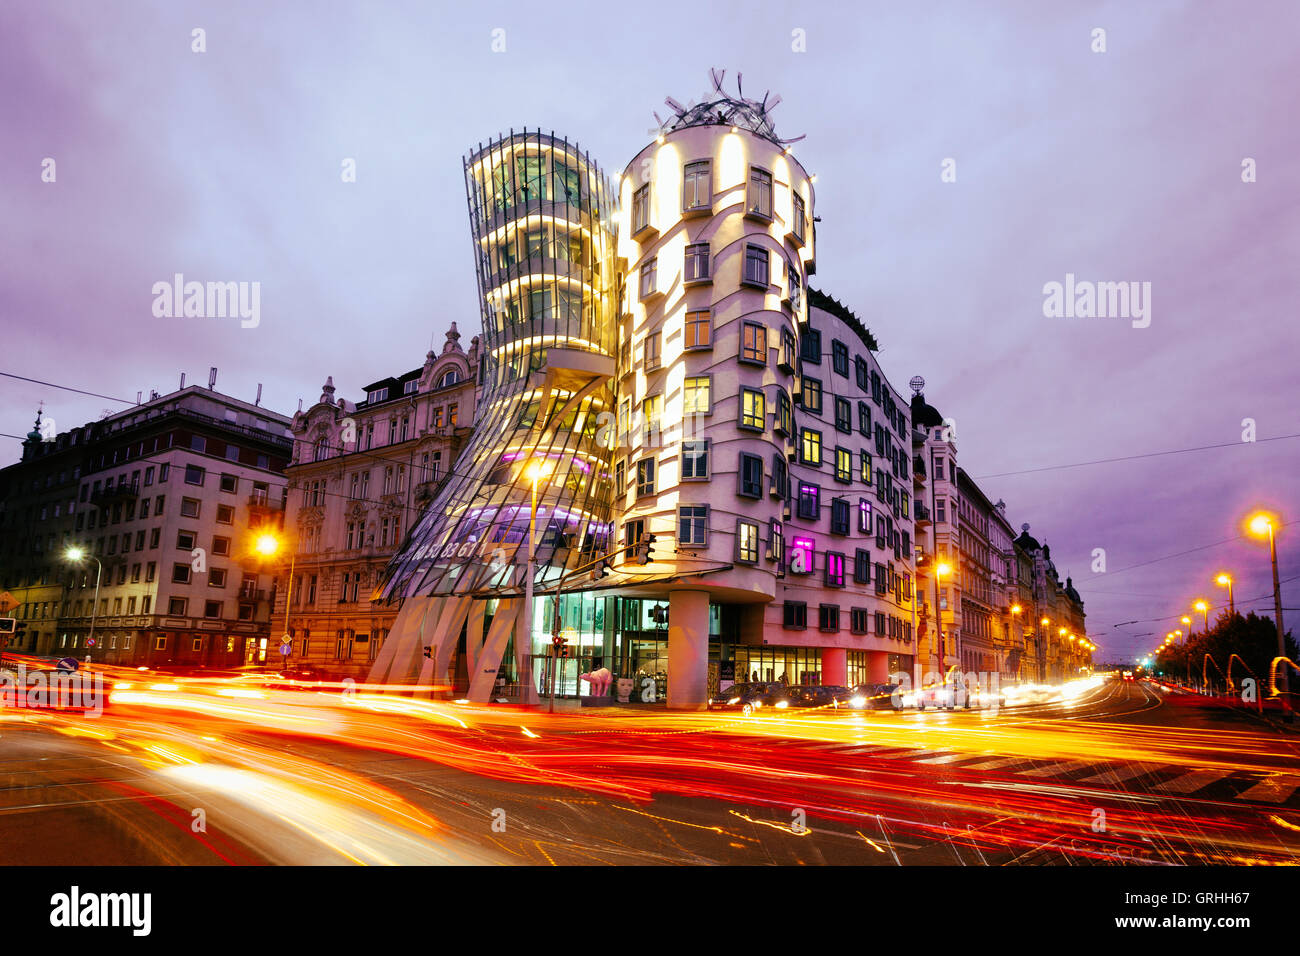 La maison qui danse conçu par Frank Gehry, Prague, République Tchèque, Europe Banque D'Images